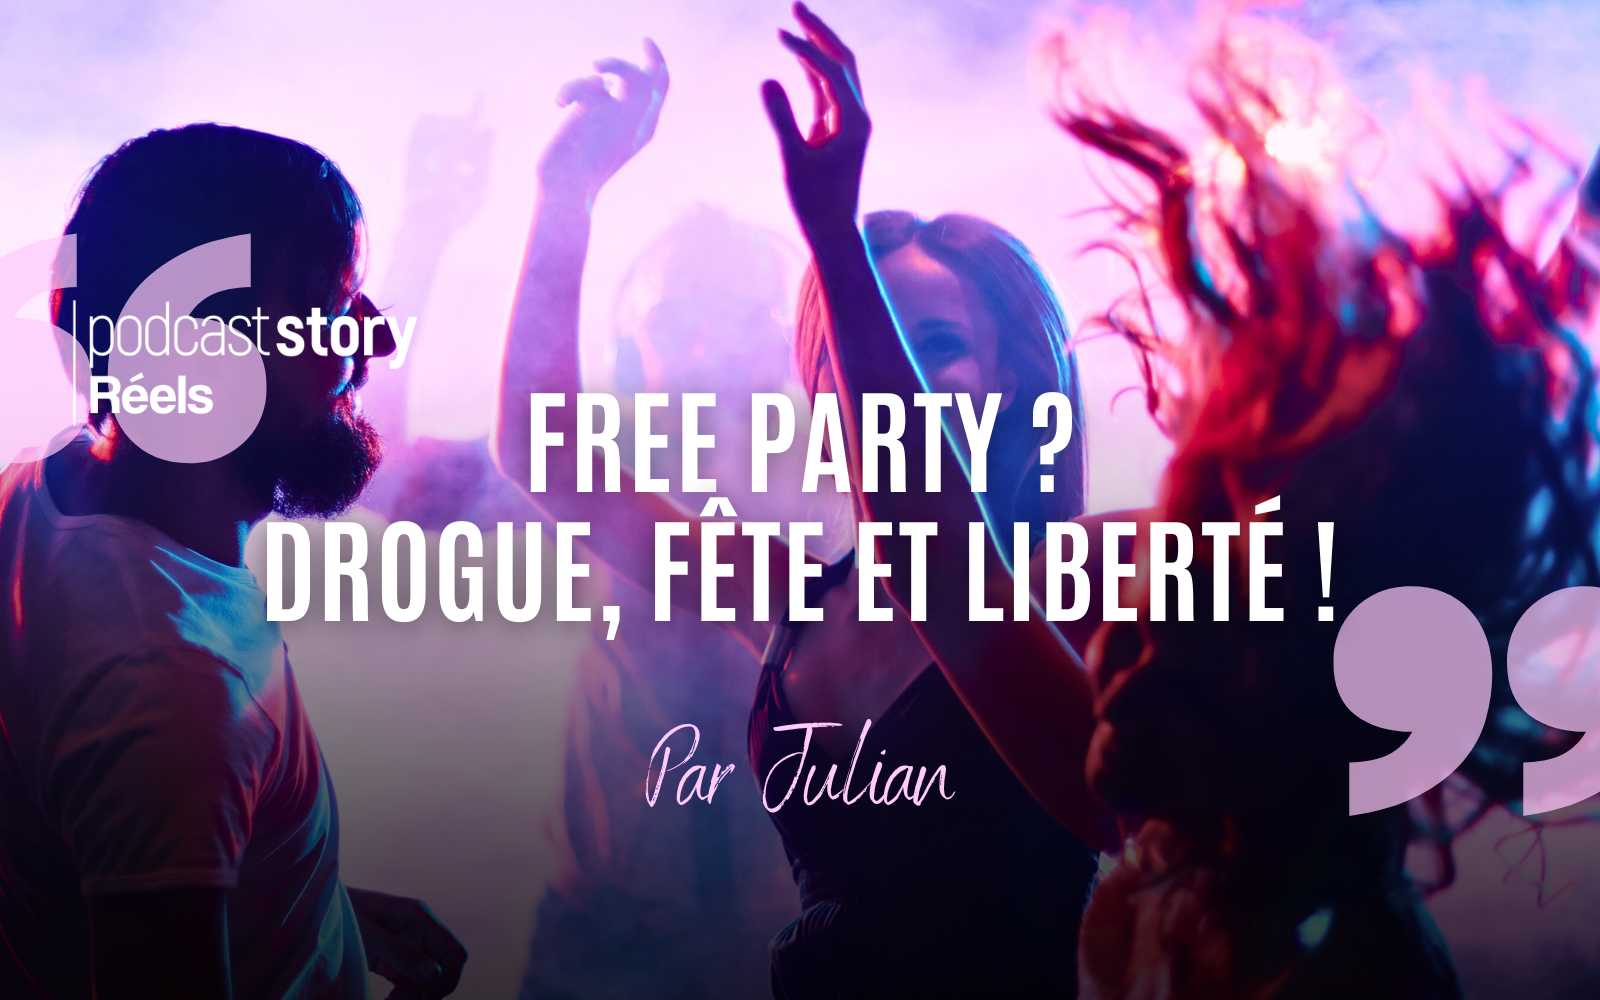 FREE PARTY ? DROGUE, FÊTE, LIBERTÉ ! – Par Julian